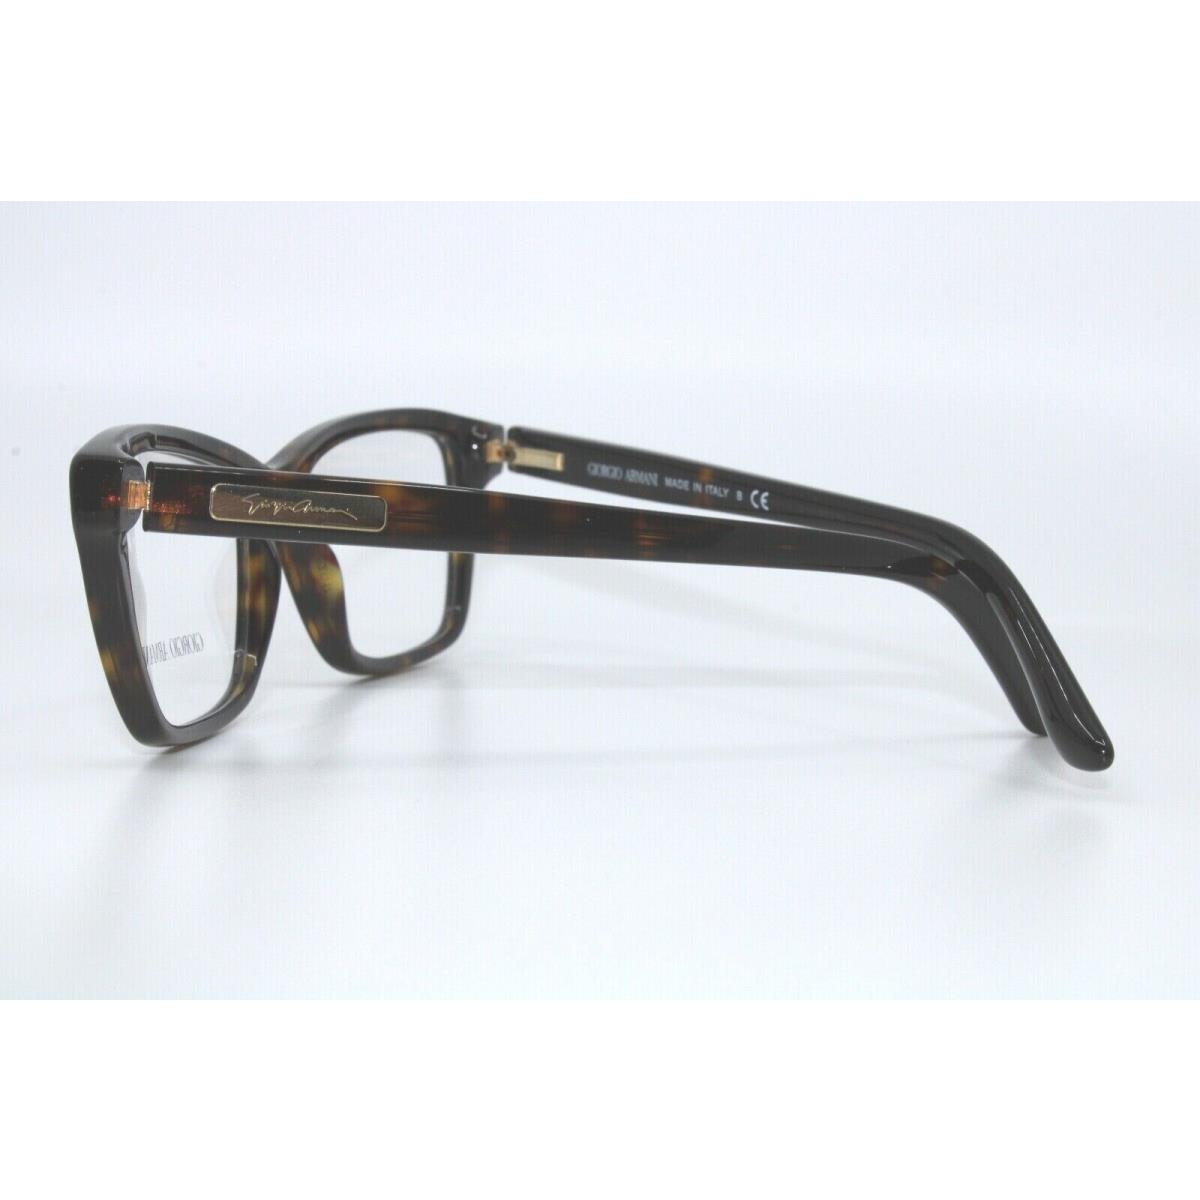 Giorgio Armani eyeglasses  - TORTOISE Frame 1